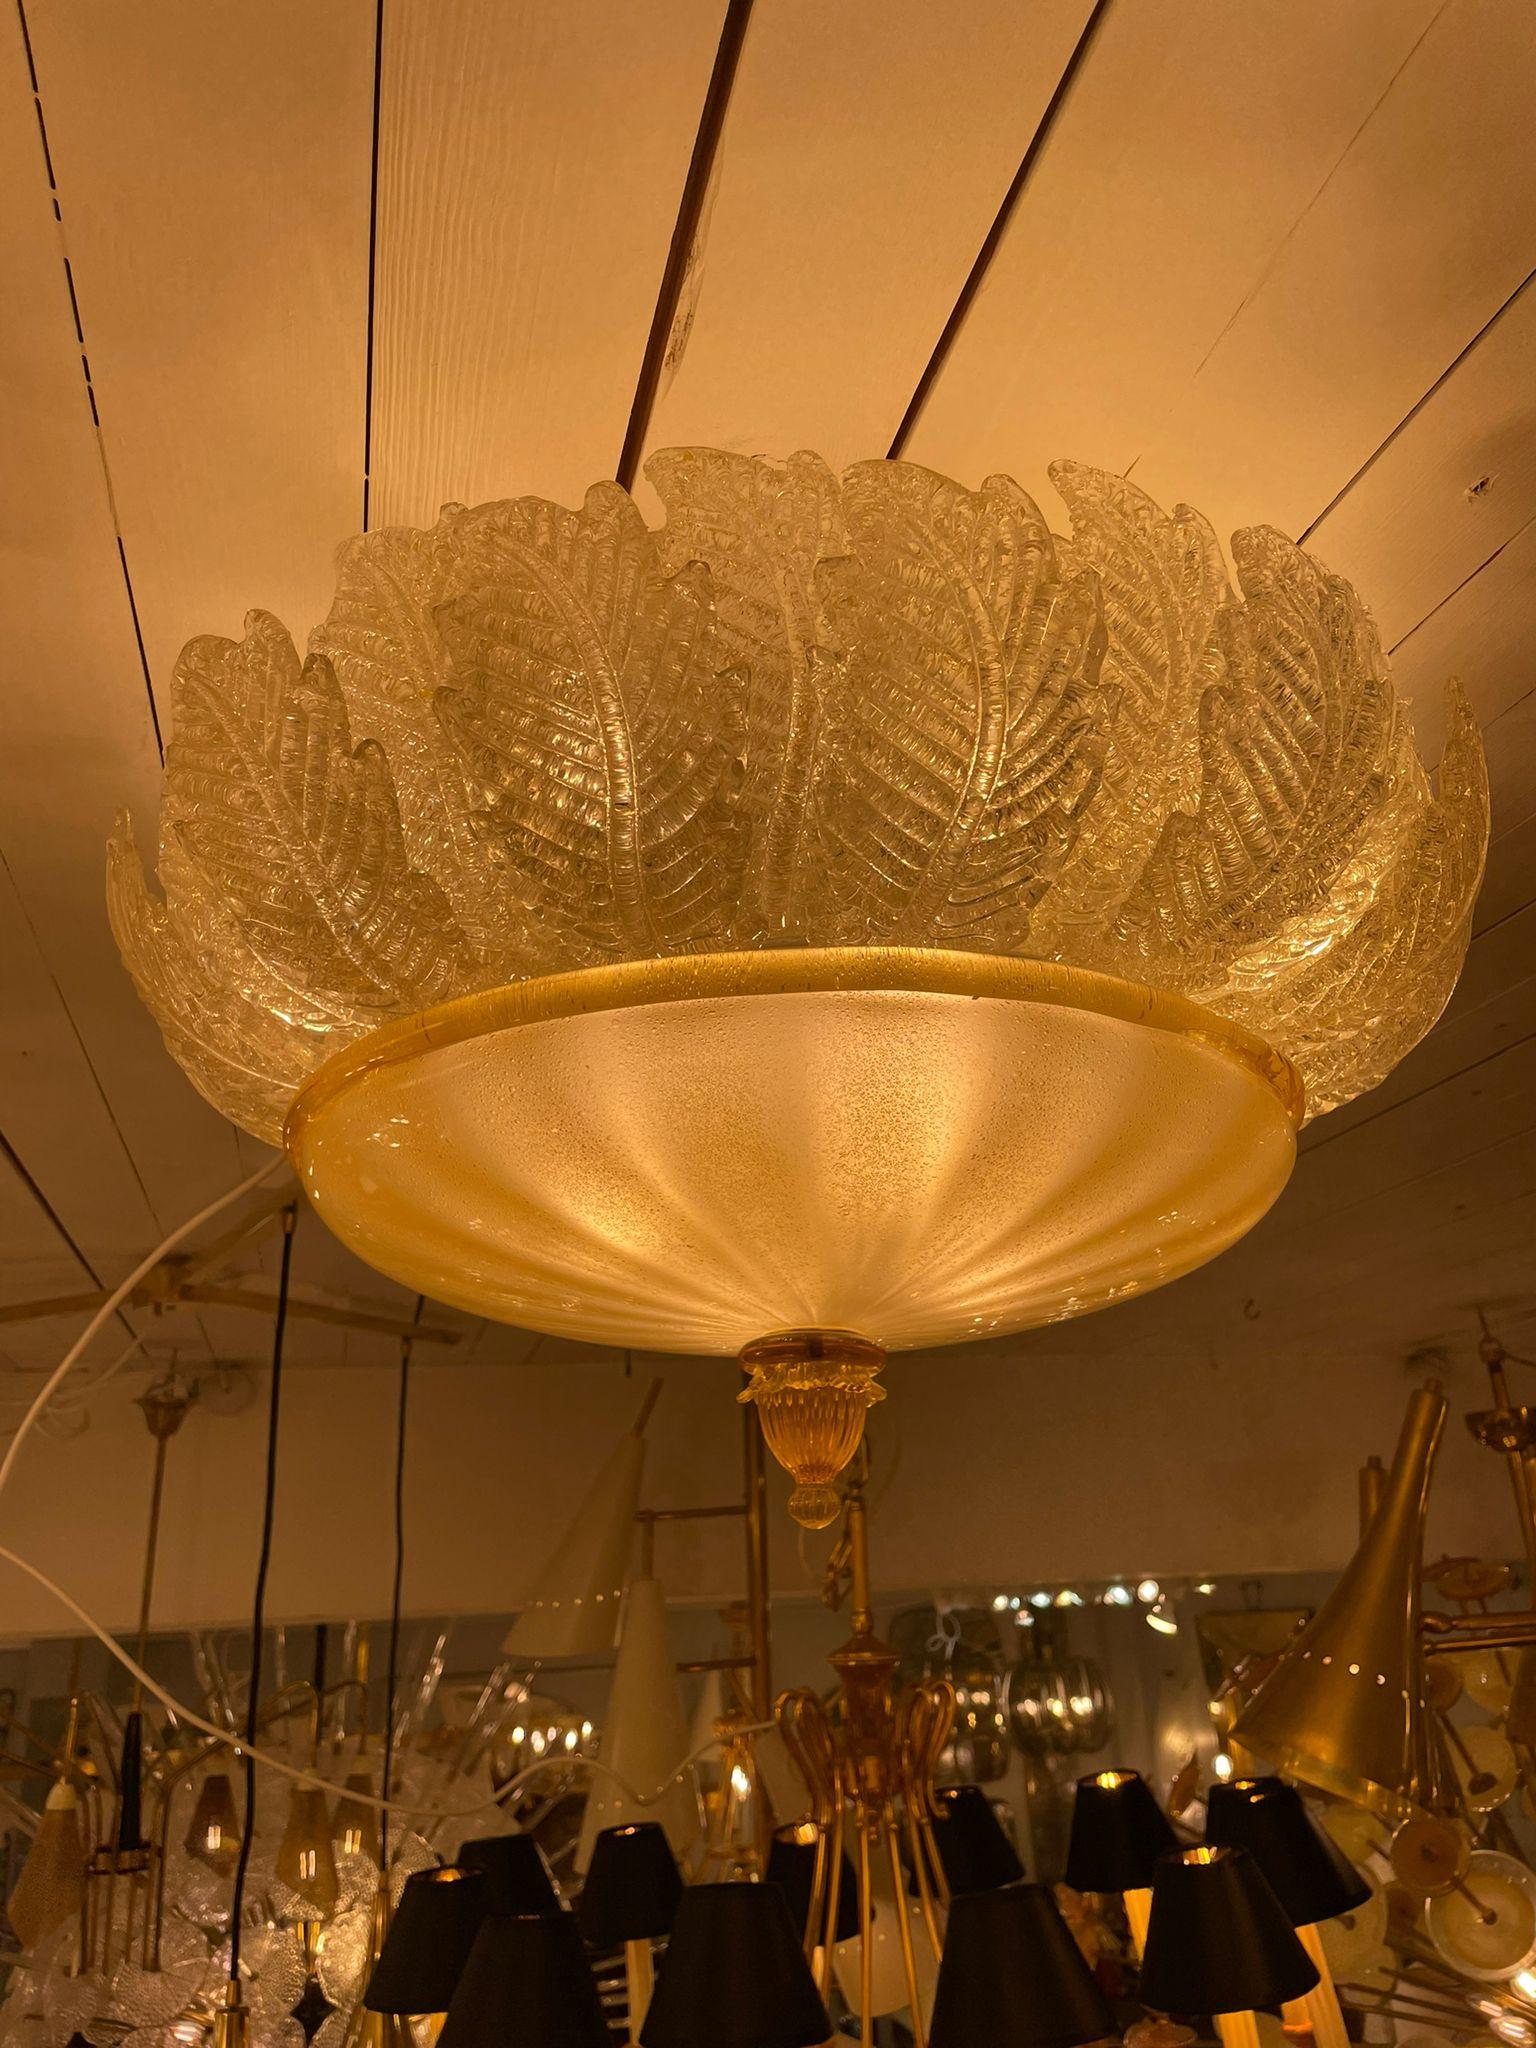 Fantastique et fabuleux plafonnier en verre d'art Barovier&Toso Italie. Cette lampe rare est composée de 28 panneaux de verre soufflé à la bouche en forme de feuilles en poudre dorée et d'un énorme verre en guise de fond. Cette beauté a l'aspect